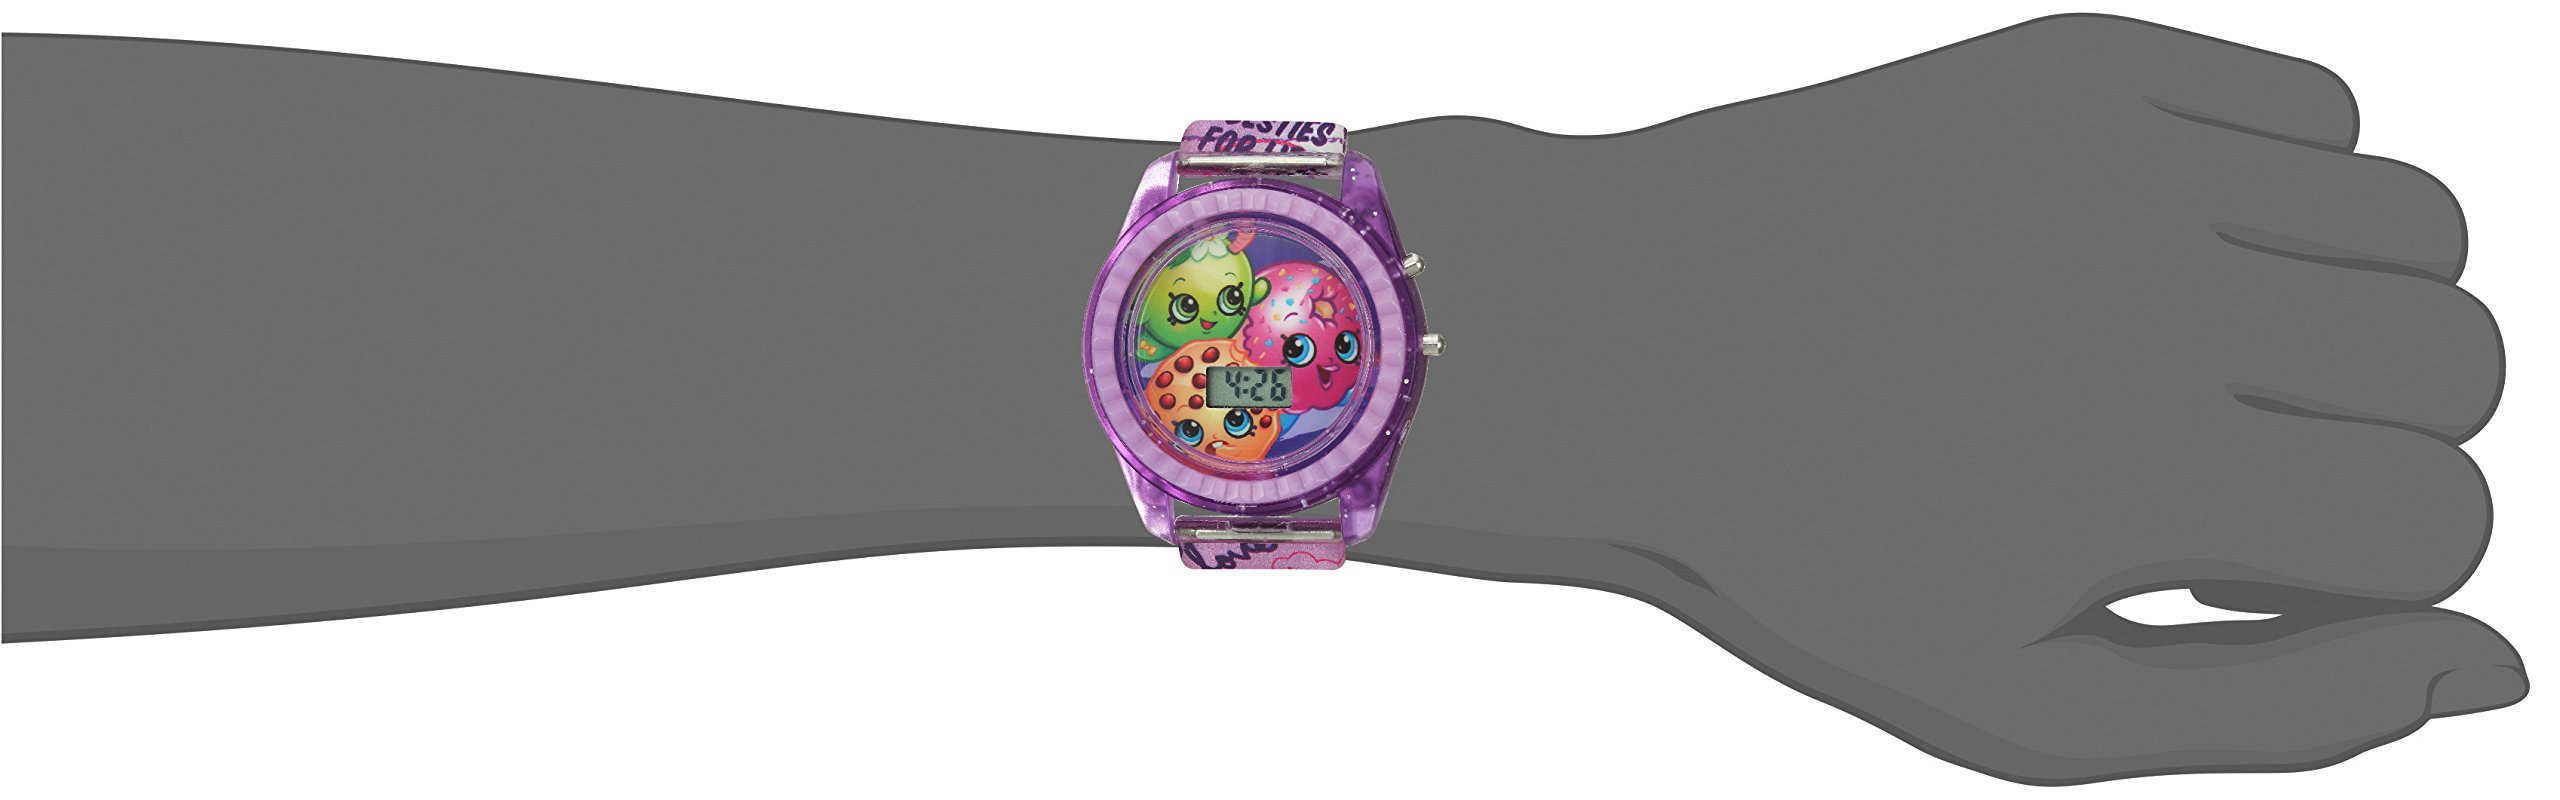 Accutime Shopkins Kids' KIN4116 Digital Display Quartz Purple Watch